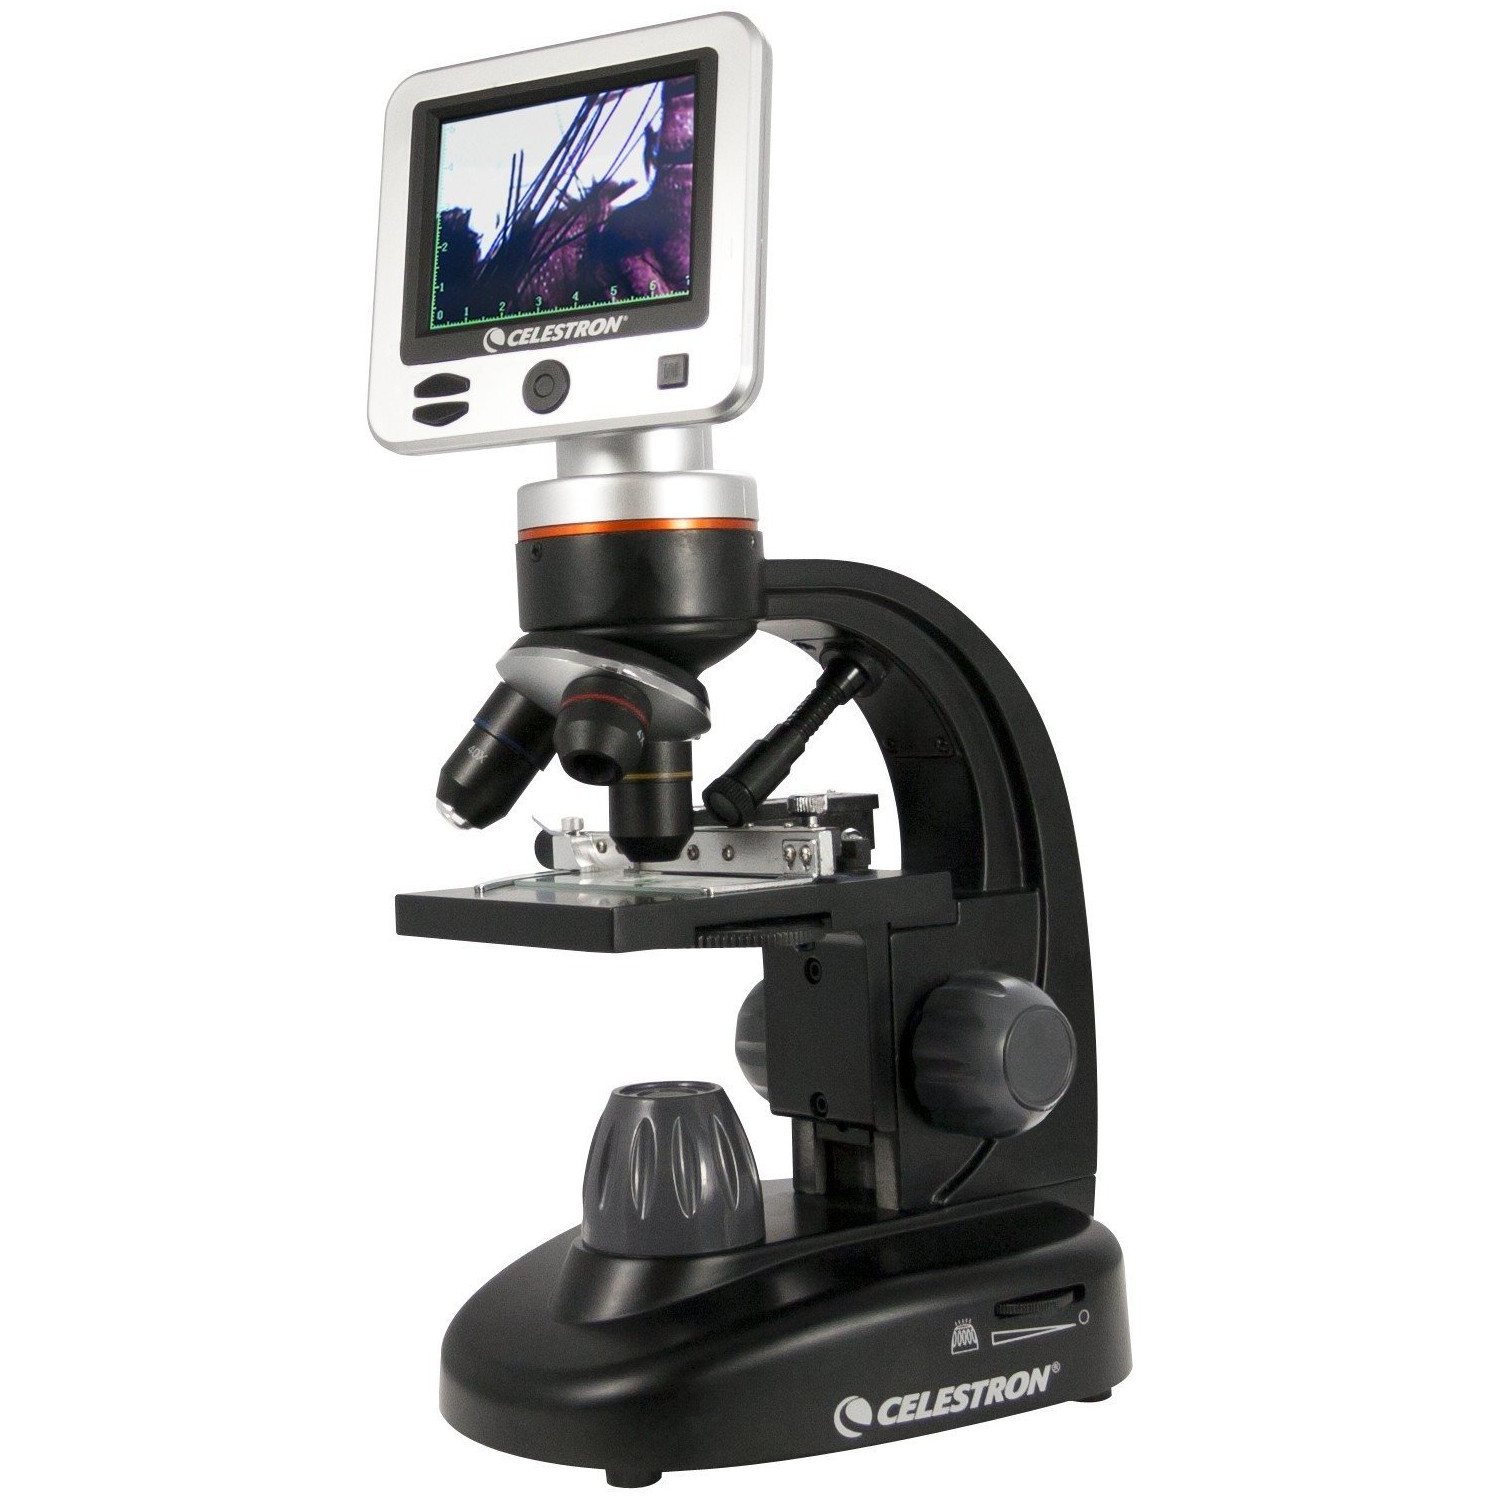 セレストロン デジタル顕微鏡 「1080P HD」 VIXEN CELESTRON デジタルケンビキョウ1080PHD 